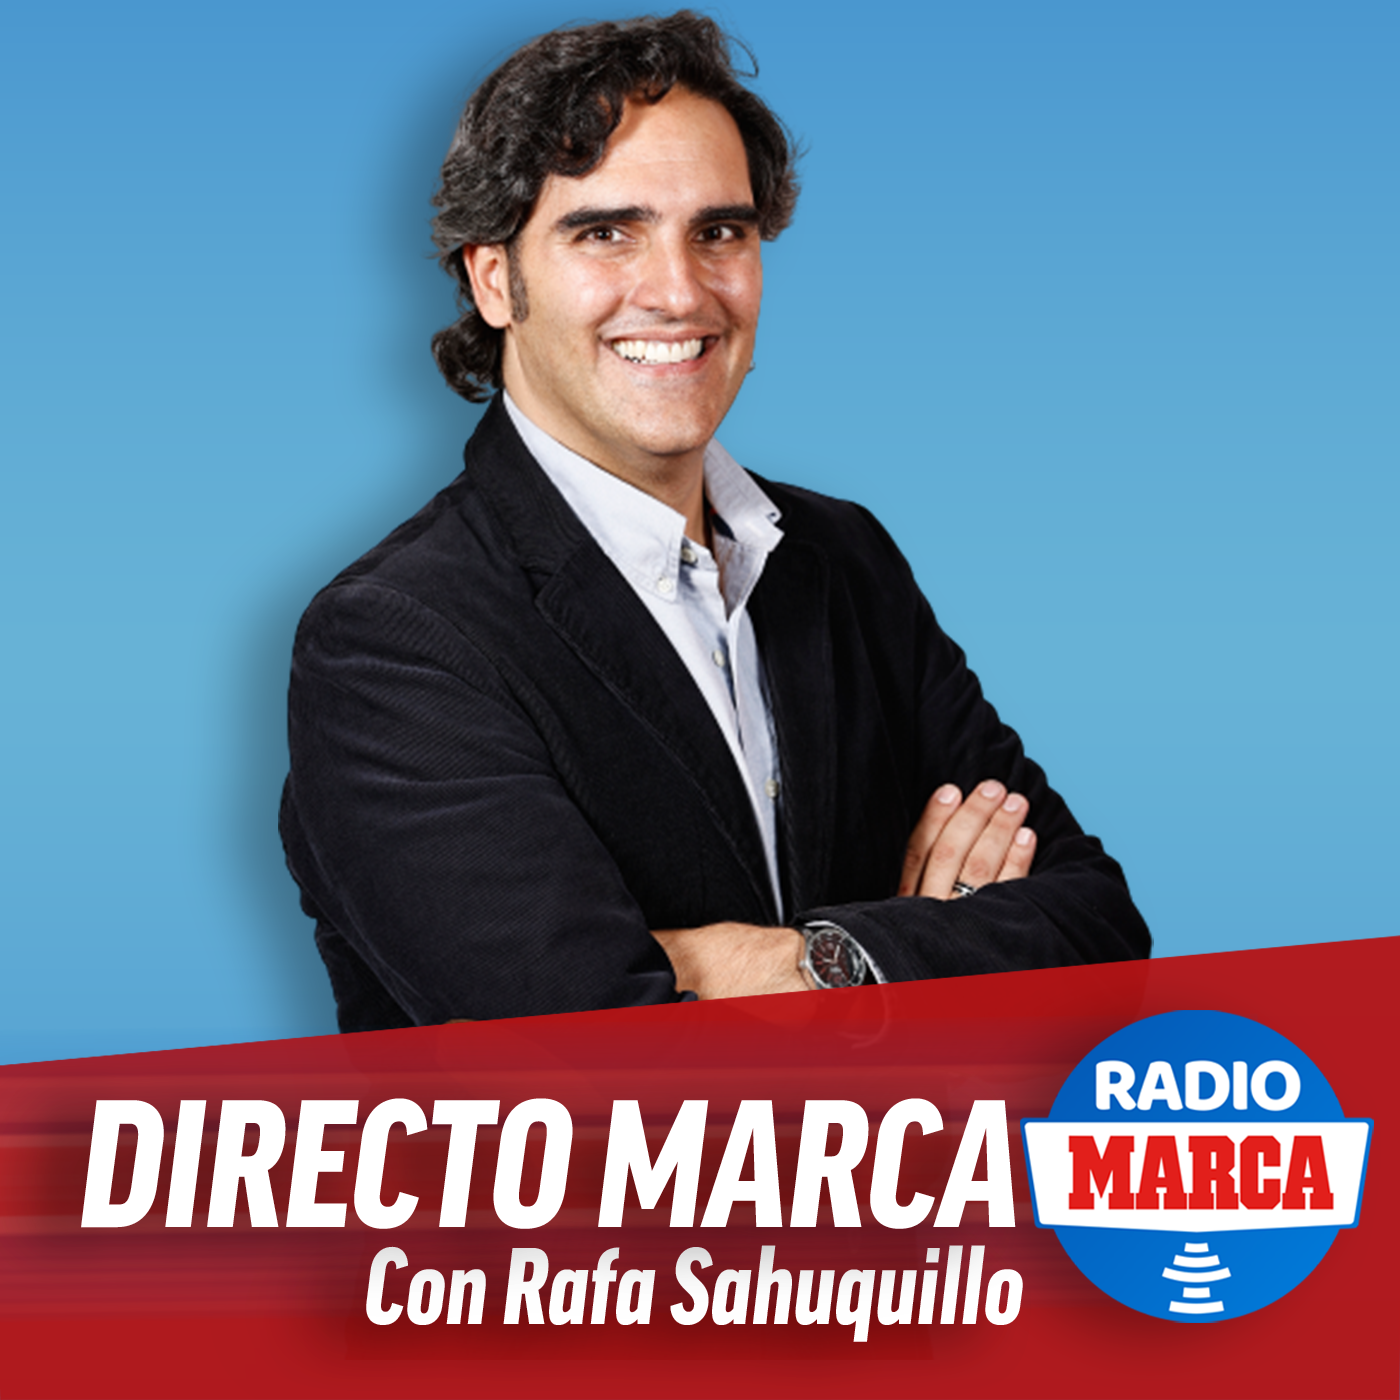 Directo MARCA con Rafa Sahuquillo  (6/10/2021) 2:00pm